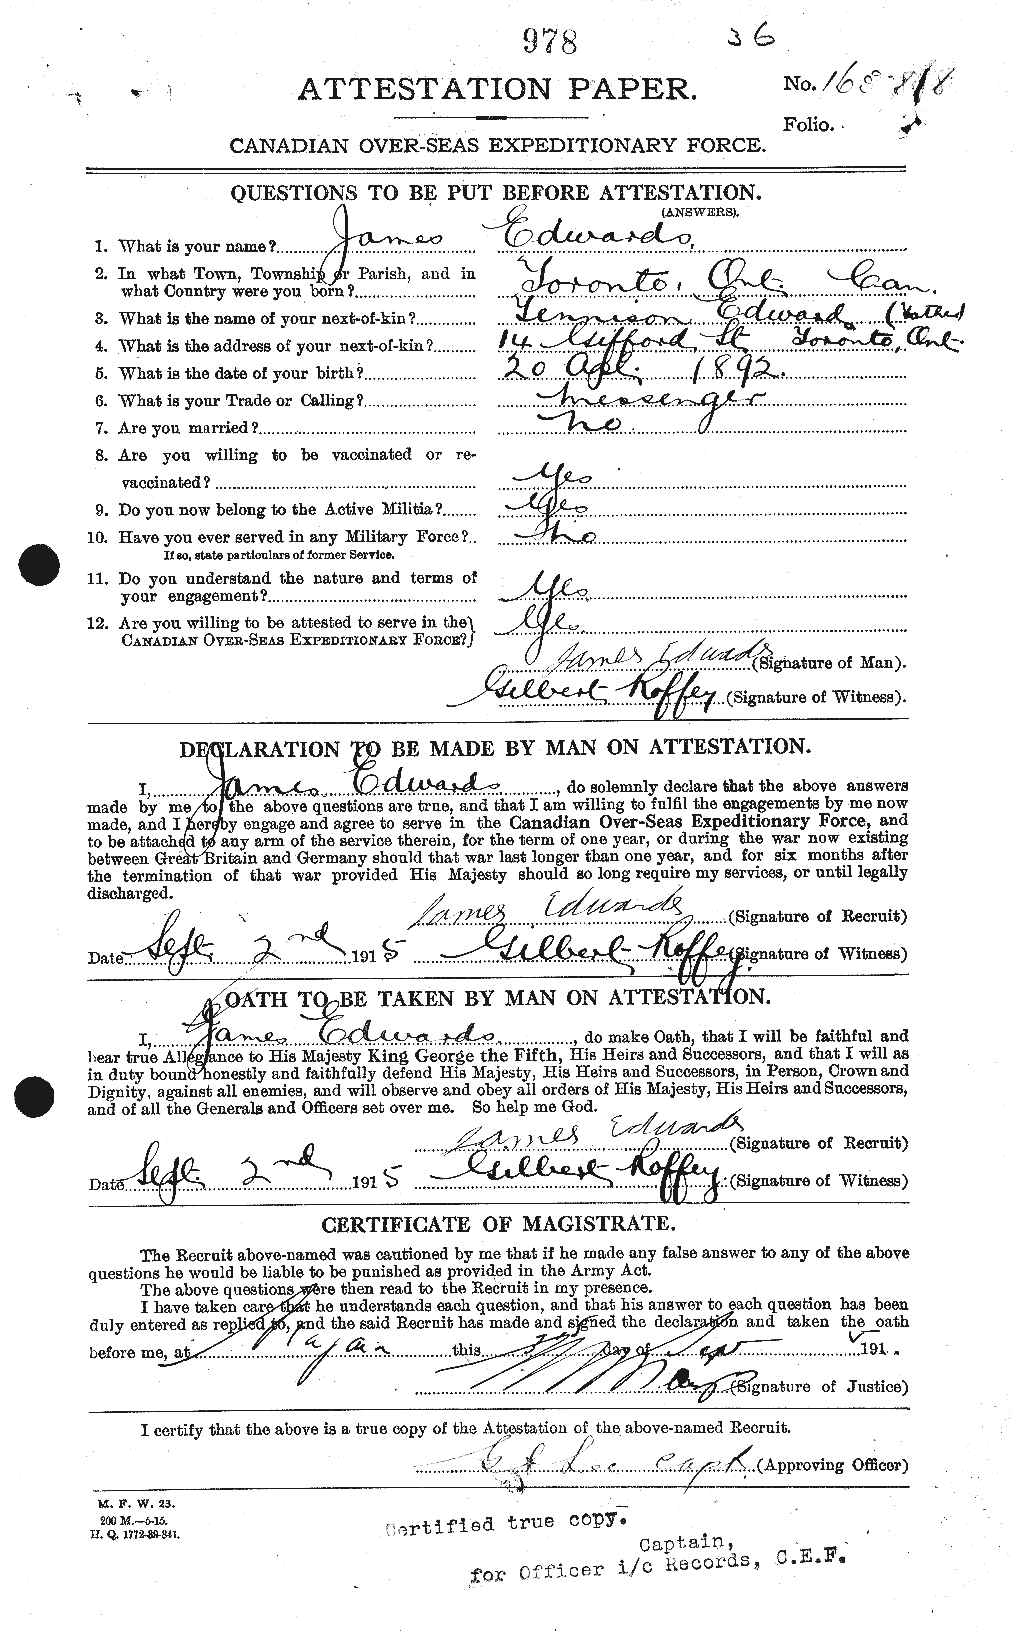 Dossiers du Personnel de la Première Guerre mondiale - CEC 309802a